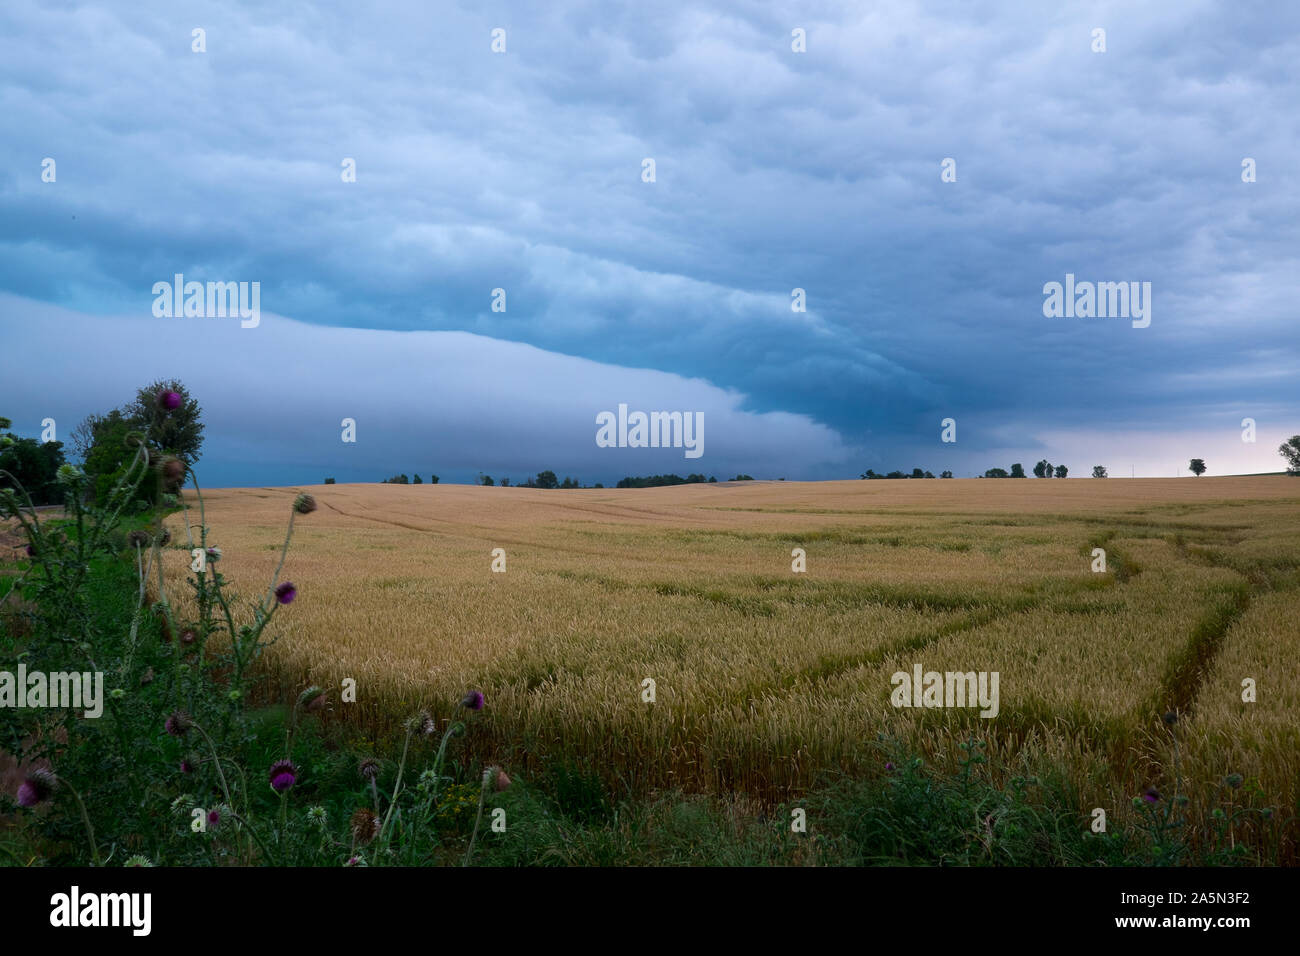 Avvicinandosi ai campi di fattoria, un fronte di tempesta si muove attraverso il paesaggio occidentale del Kentucky. Foto Stock